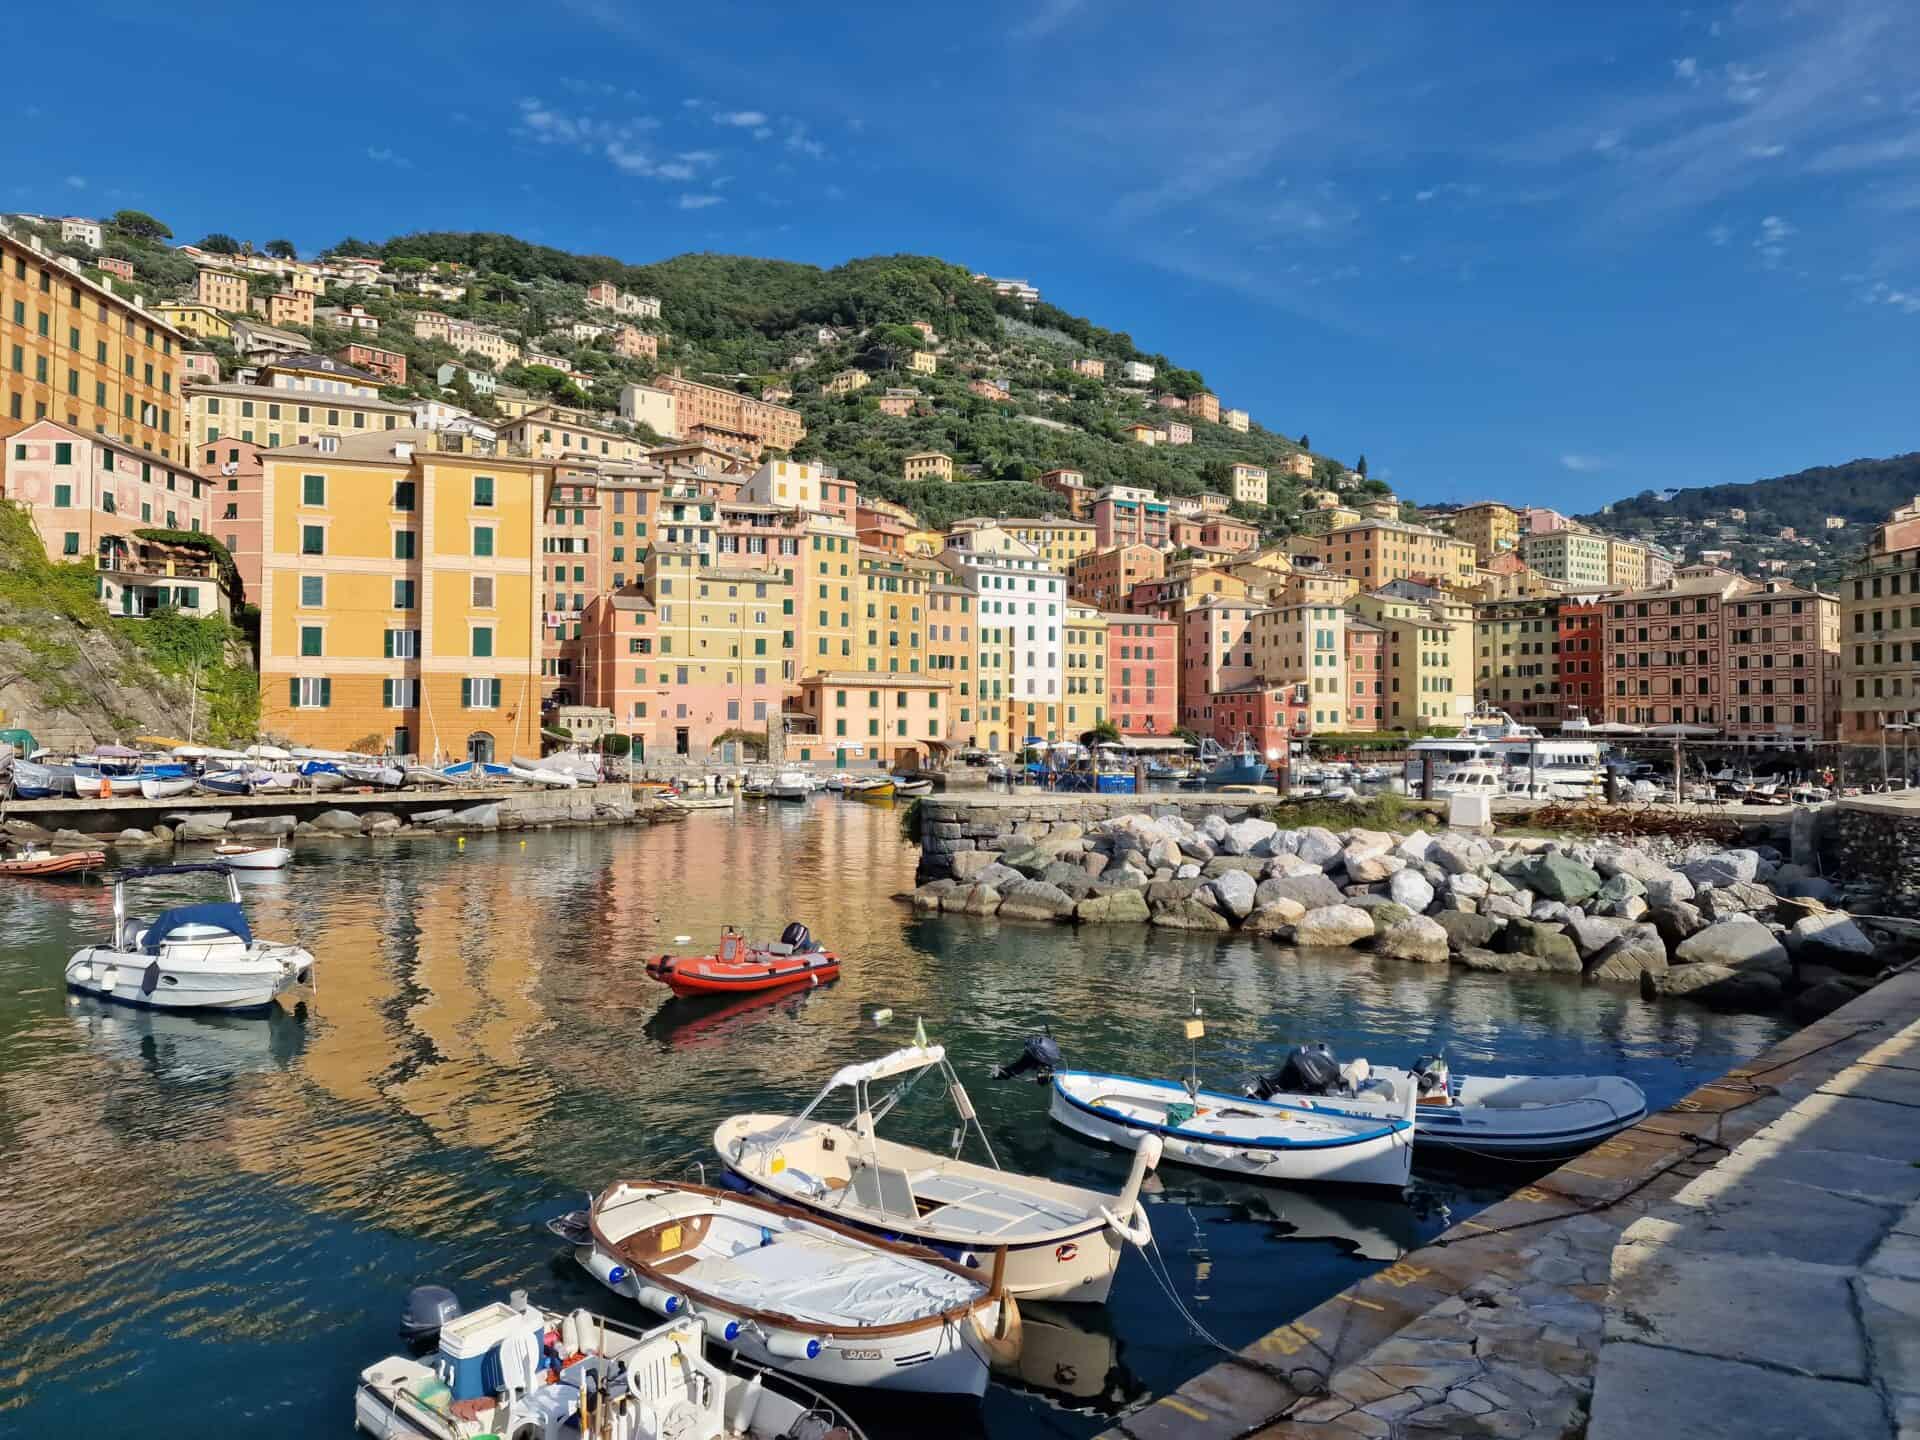 Liguria este un colț pitoresc al Italiei, cunoscut pentru peisajele sale spectaculoase de munte și coasta sa impresionantă.